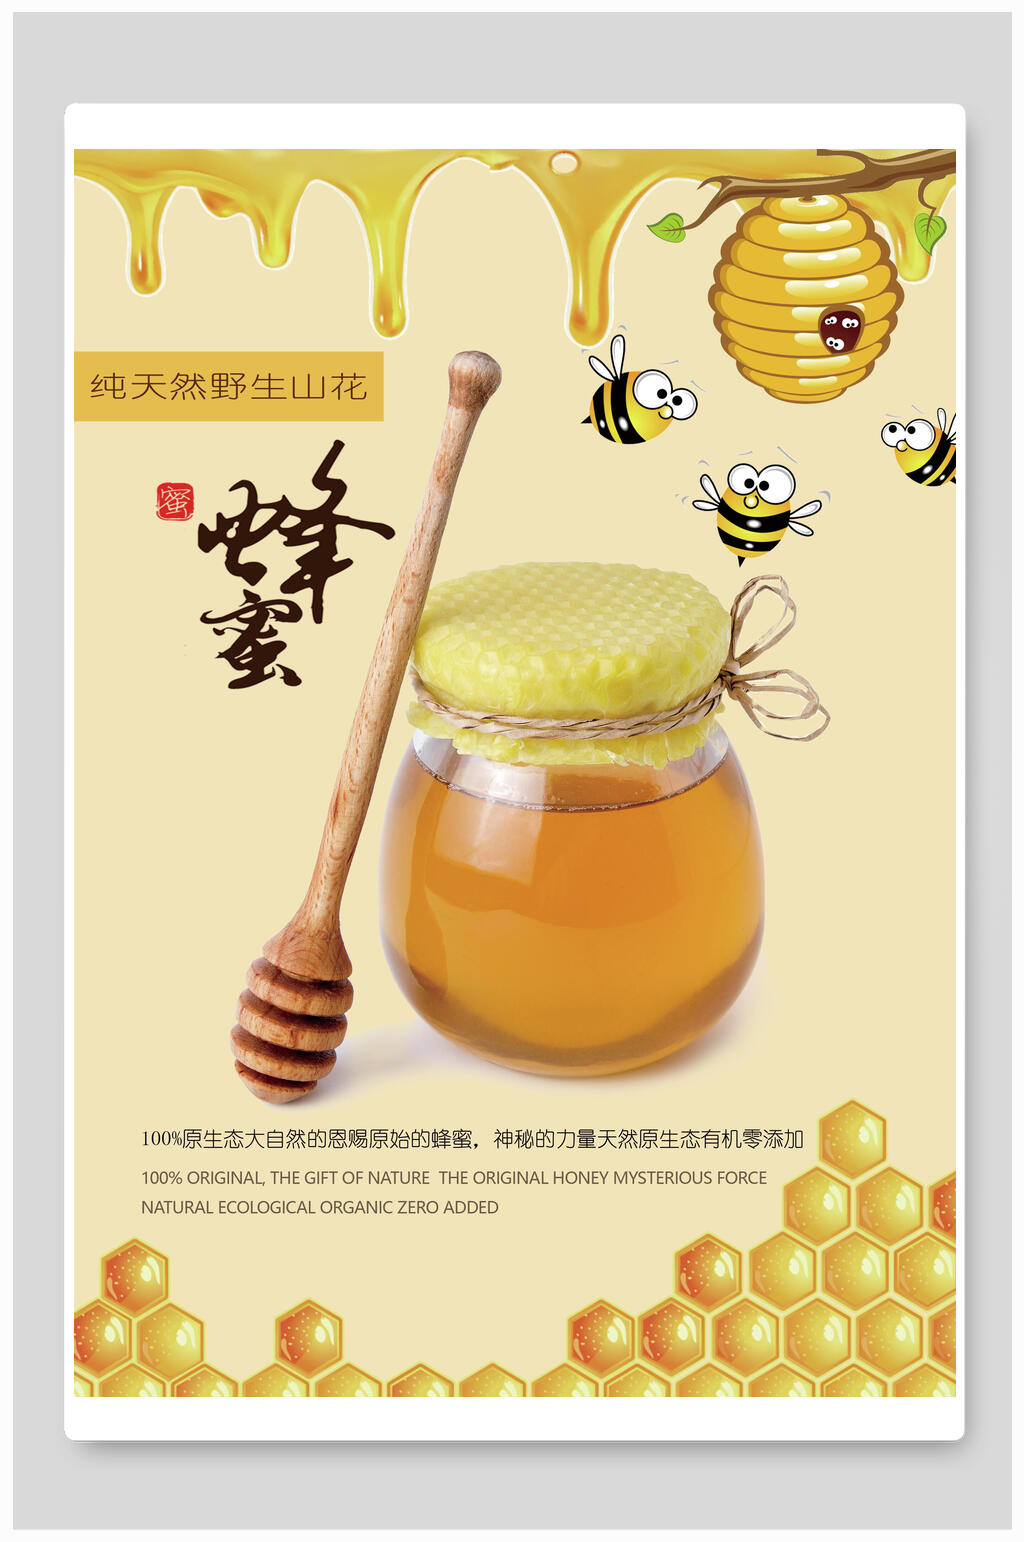 蜂蜜海报素材免费下载,本作品是由小红1210上传的原创平面广告素材